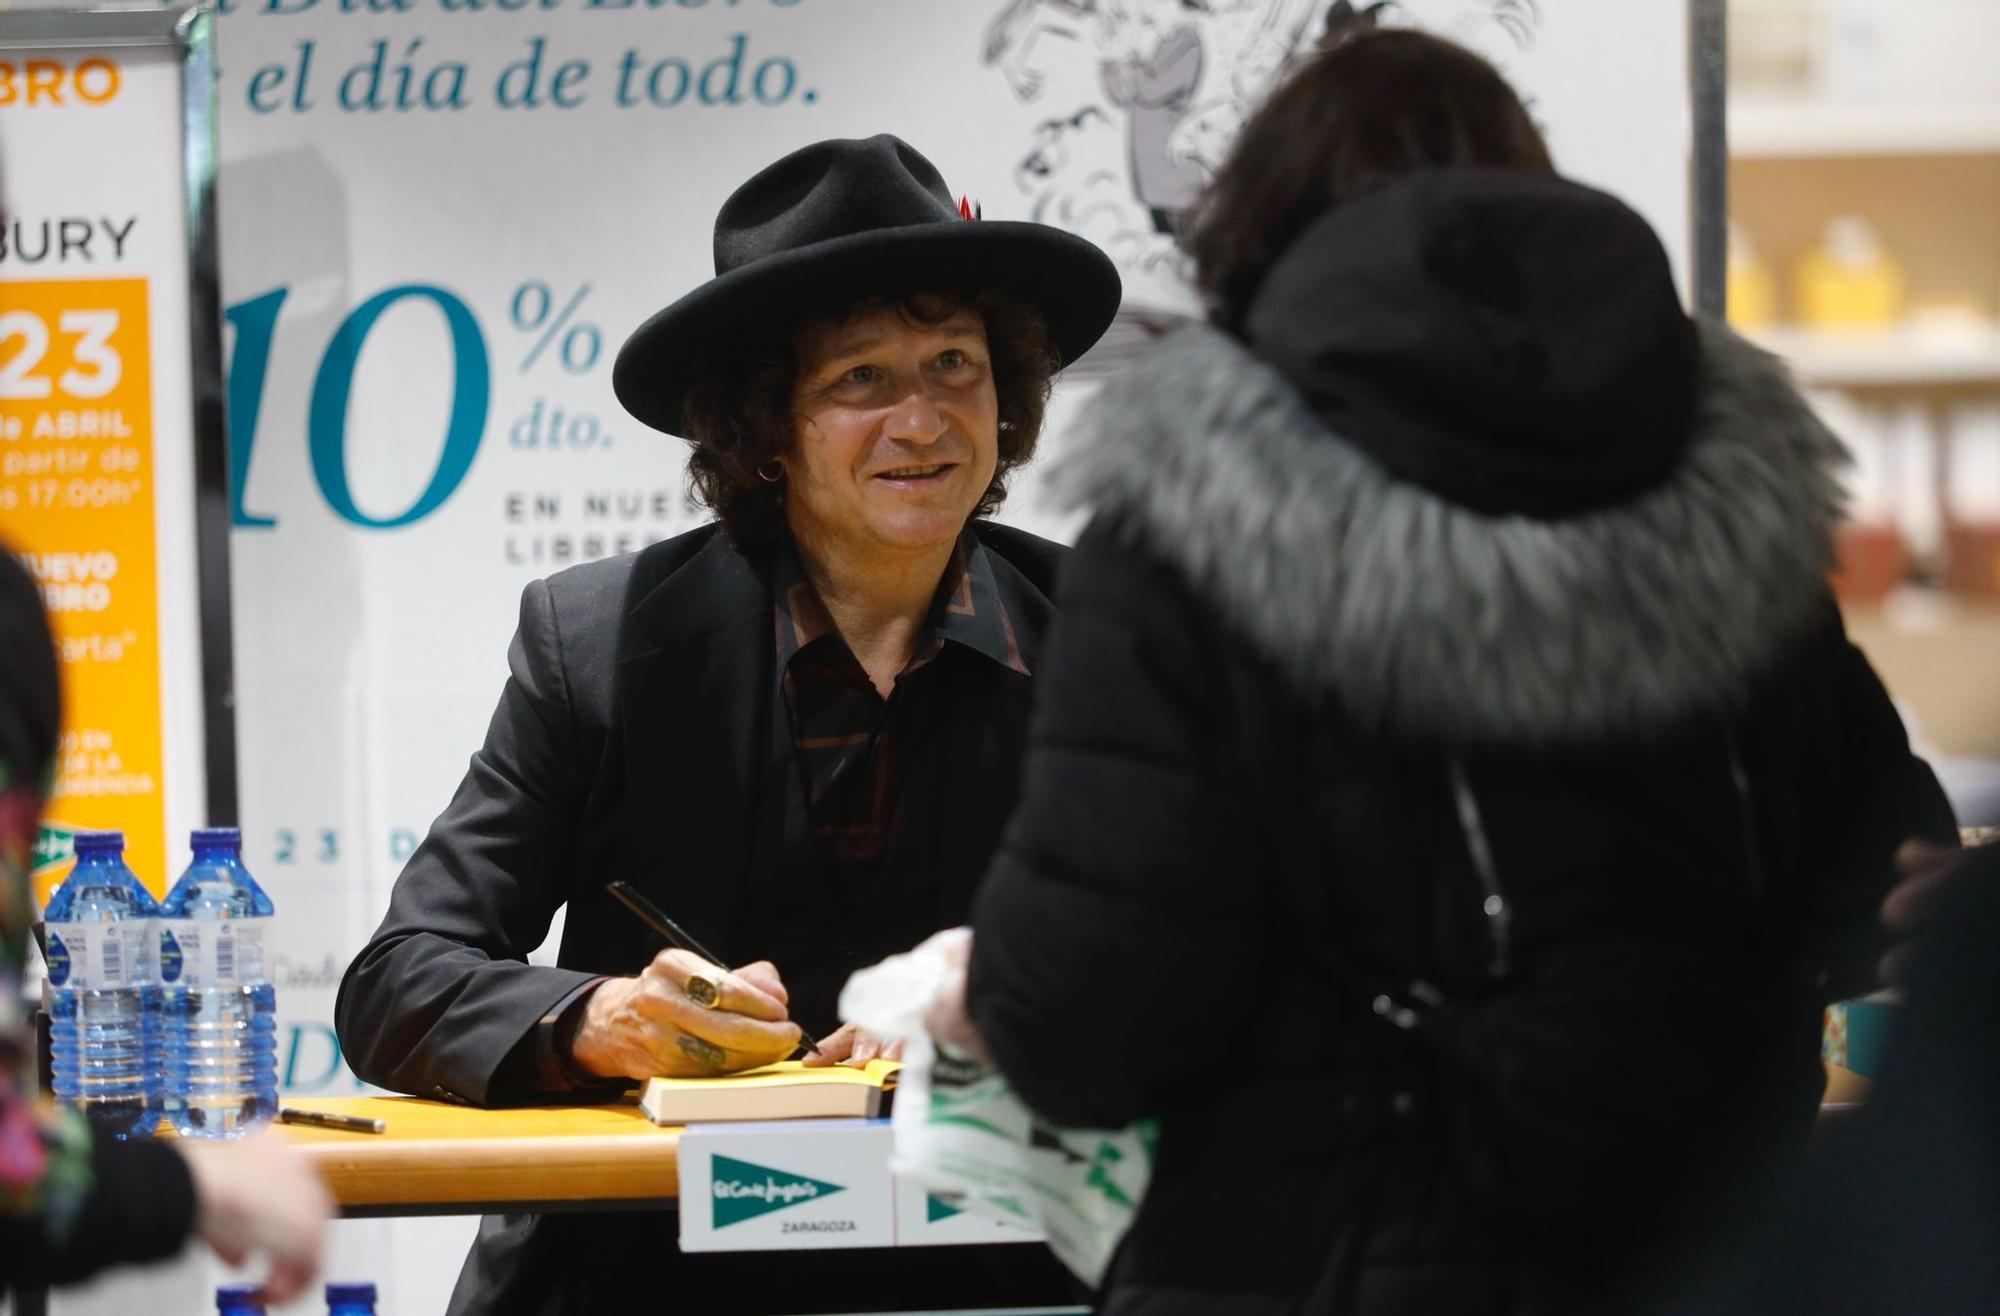 En imágenes | Bunbury desata la locura en su firma de libros en Zaragoza